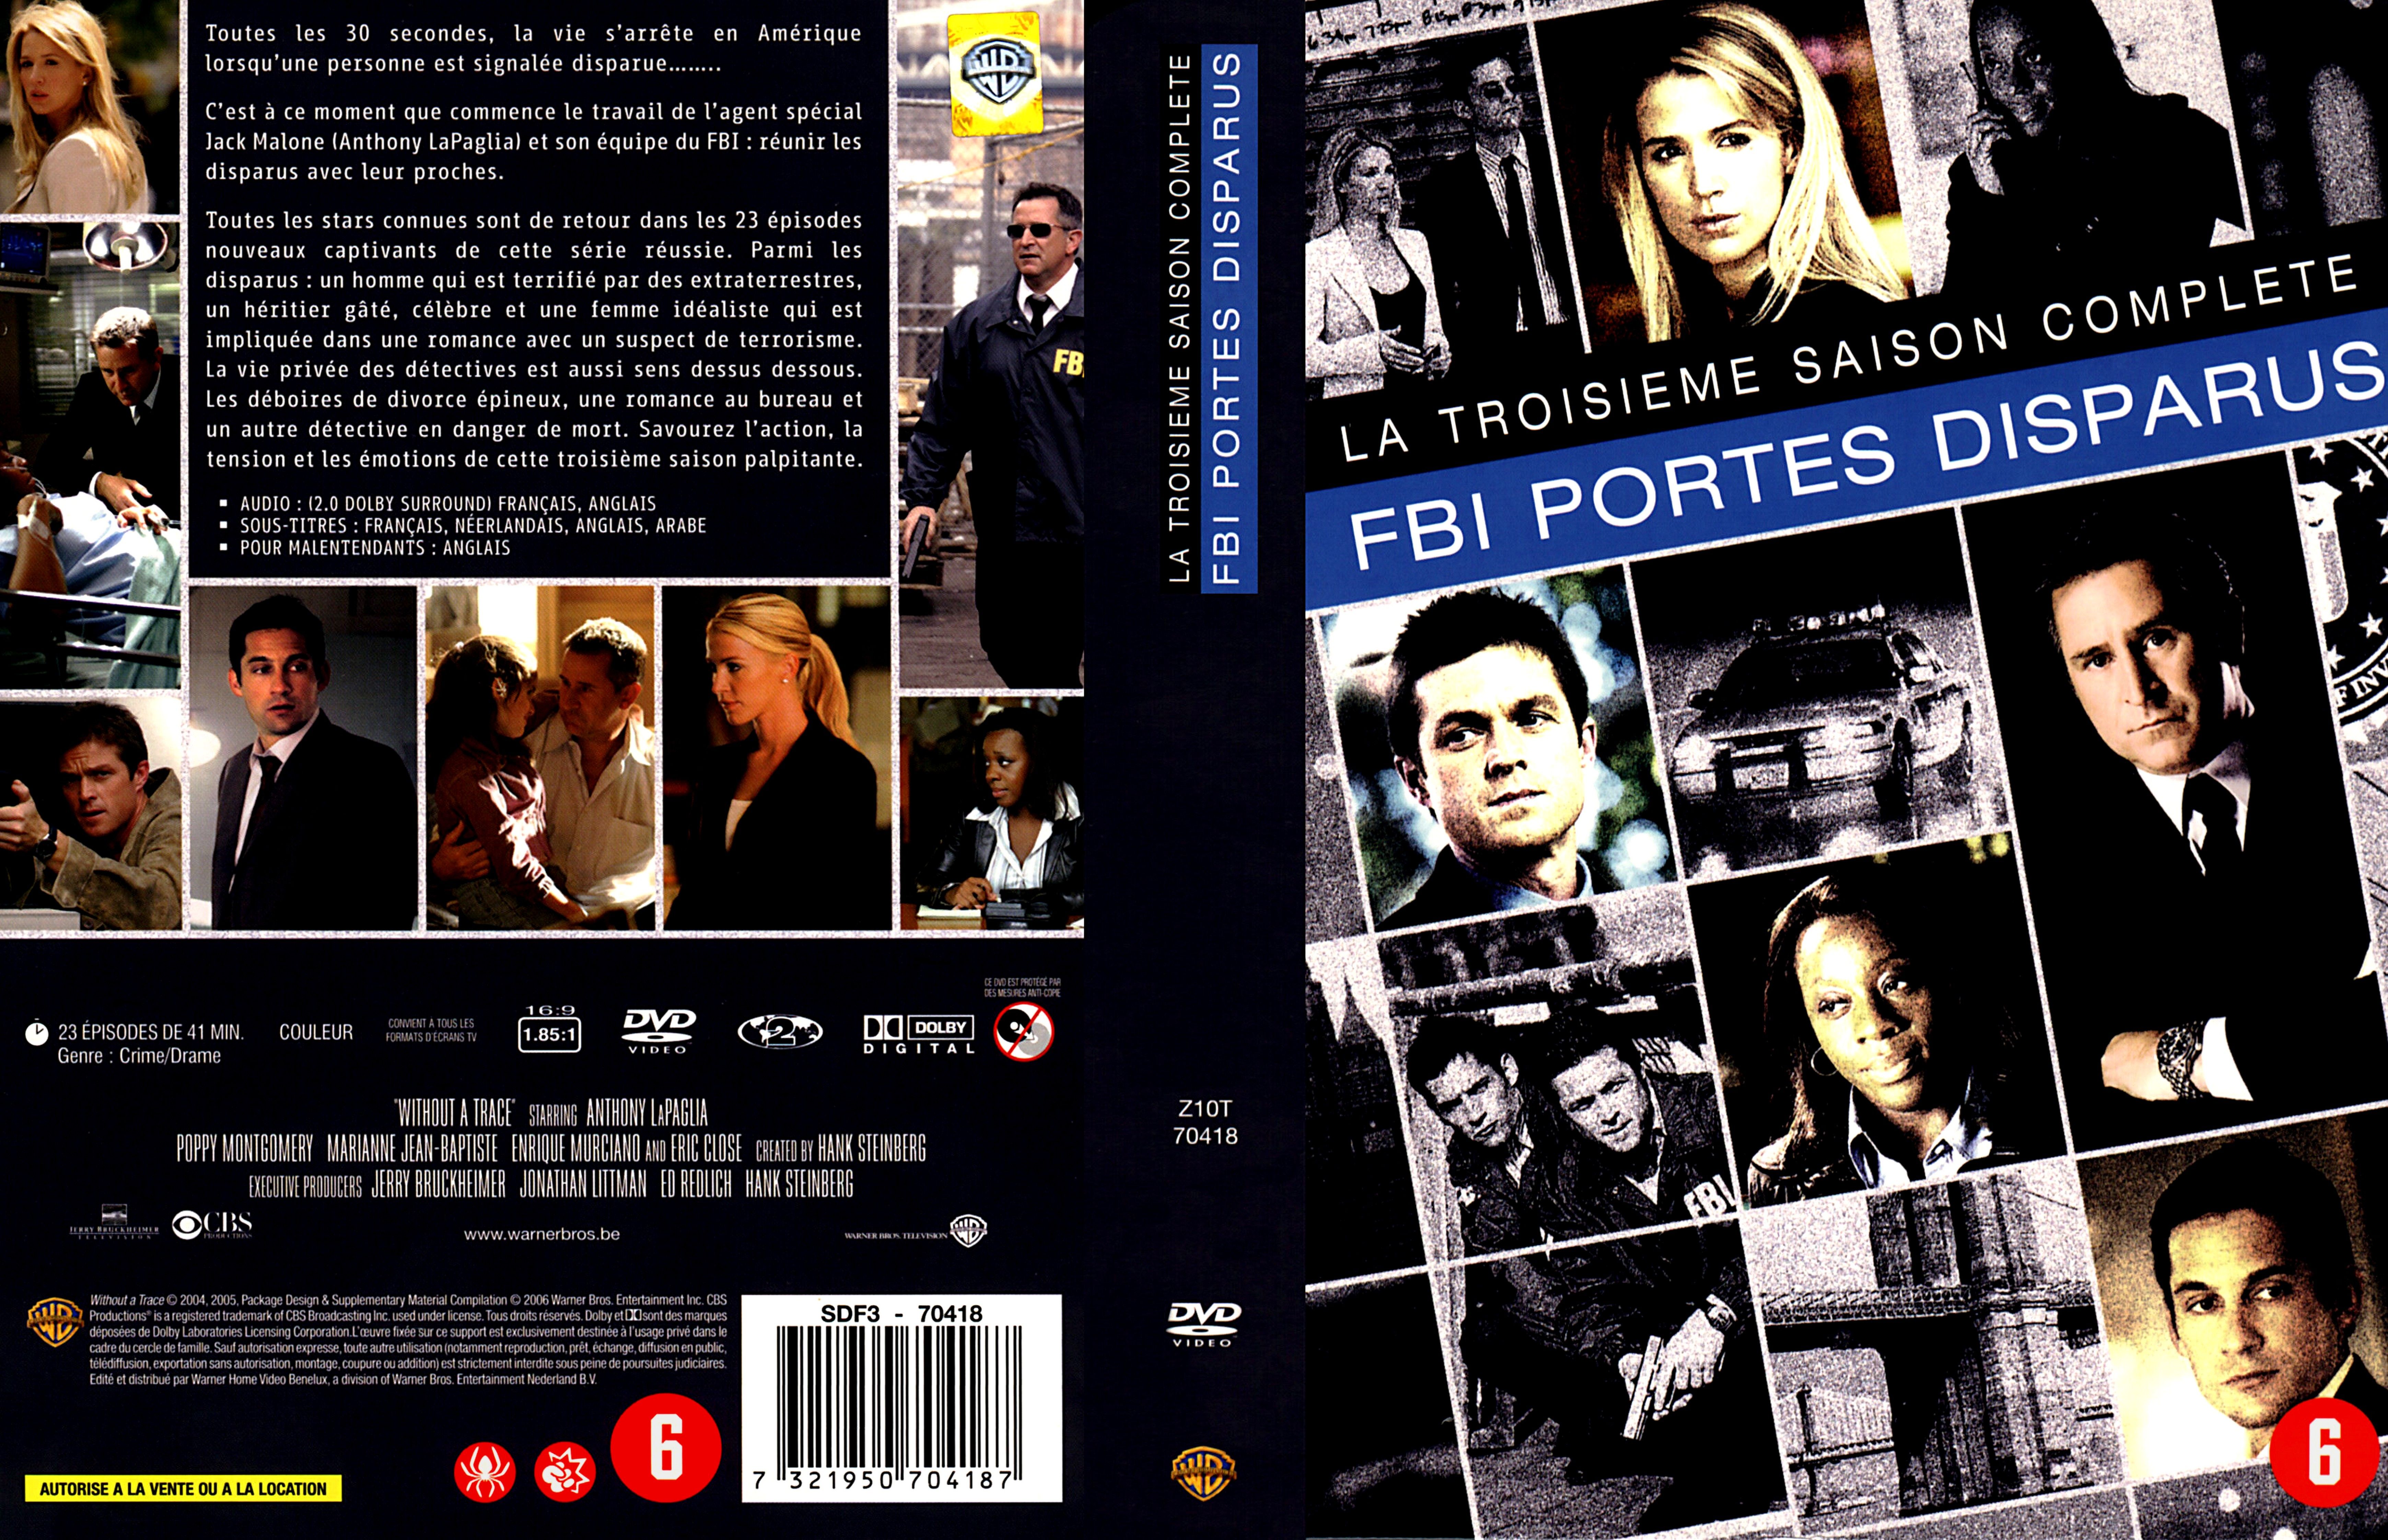 Jaquette DVD FBI portes disparus Saison 3 COFFRET